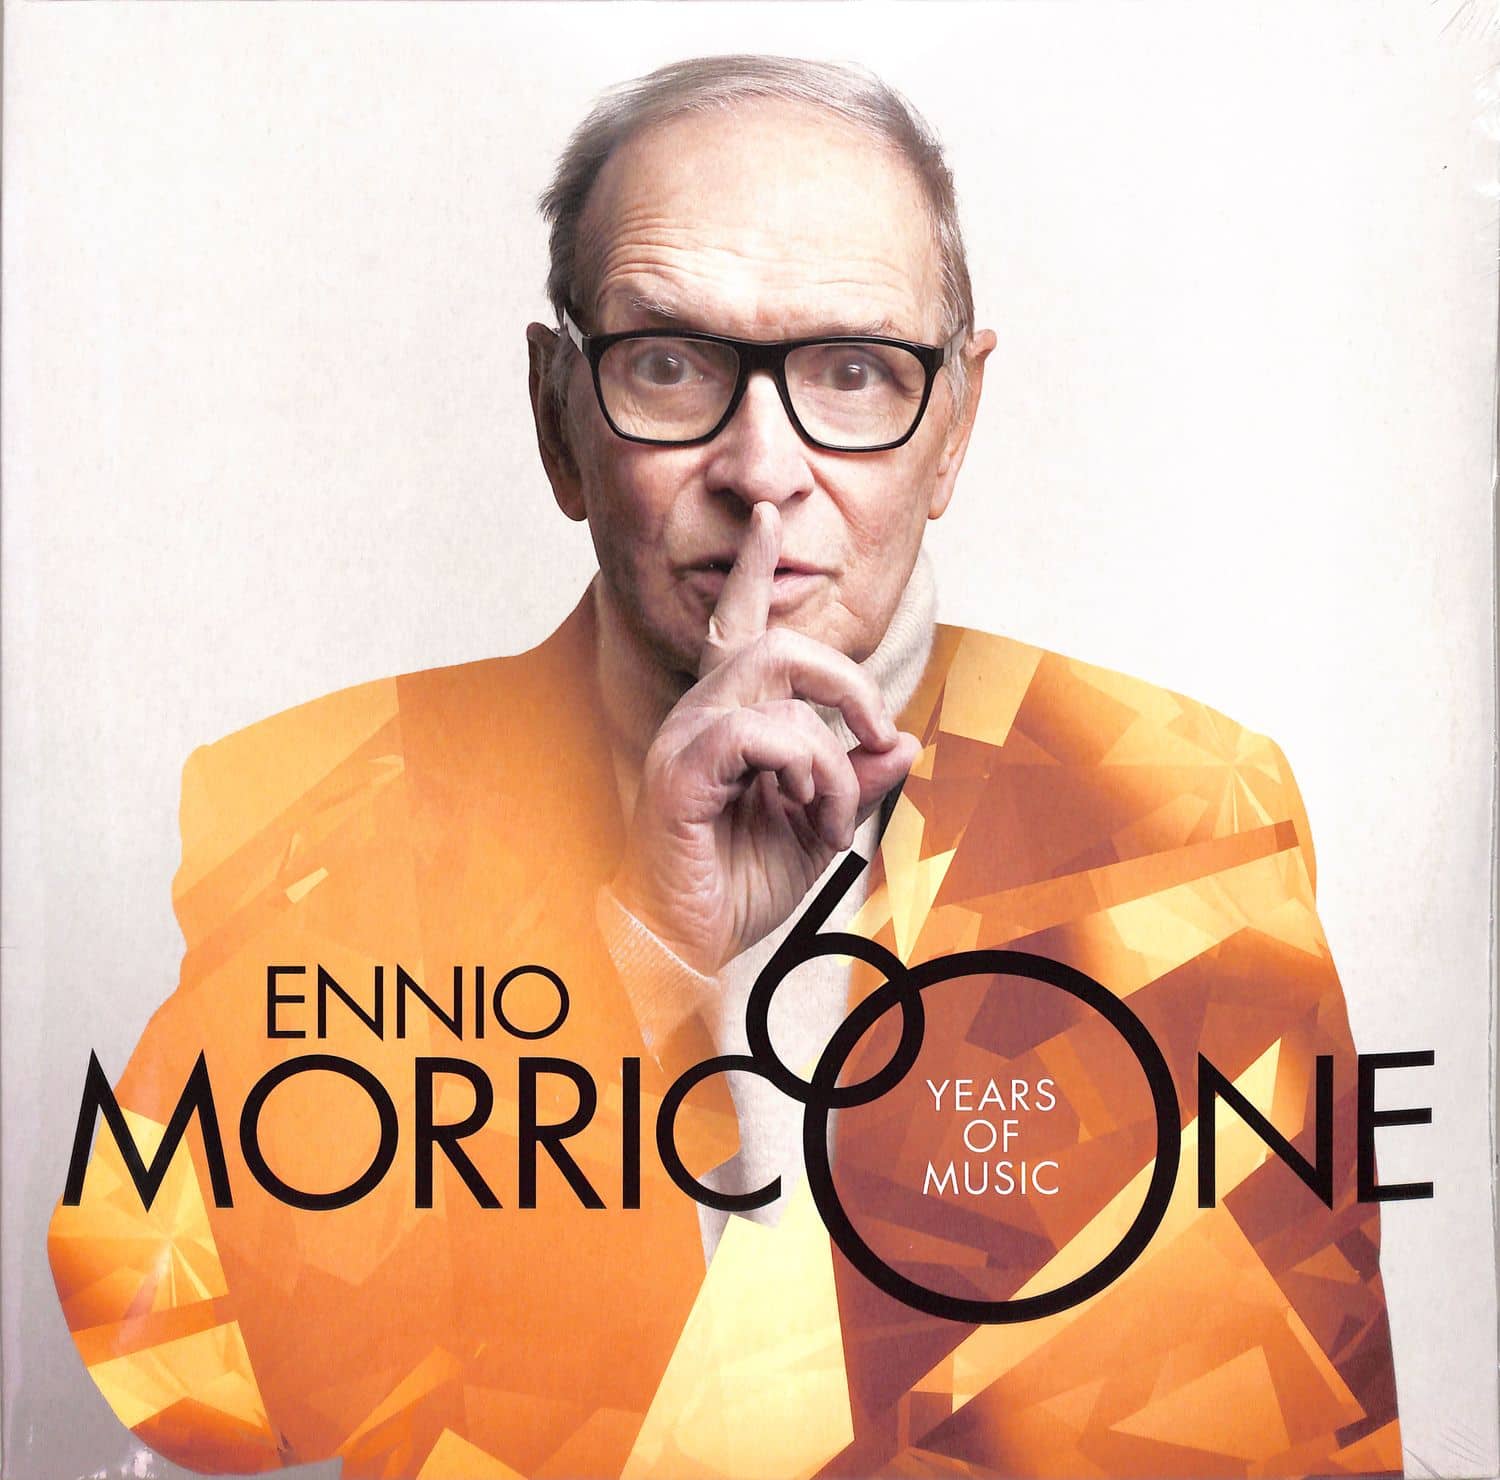 Ennio Morricone - MORRICONE 60 